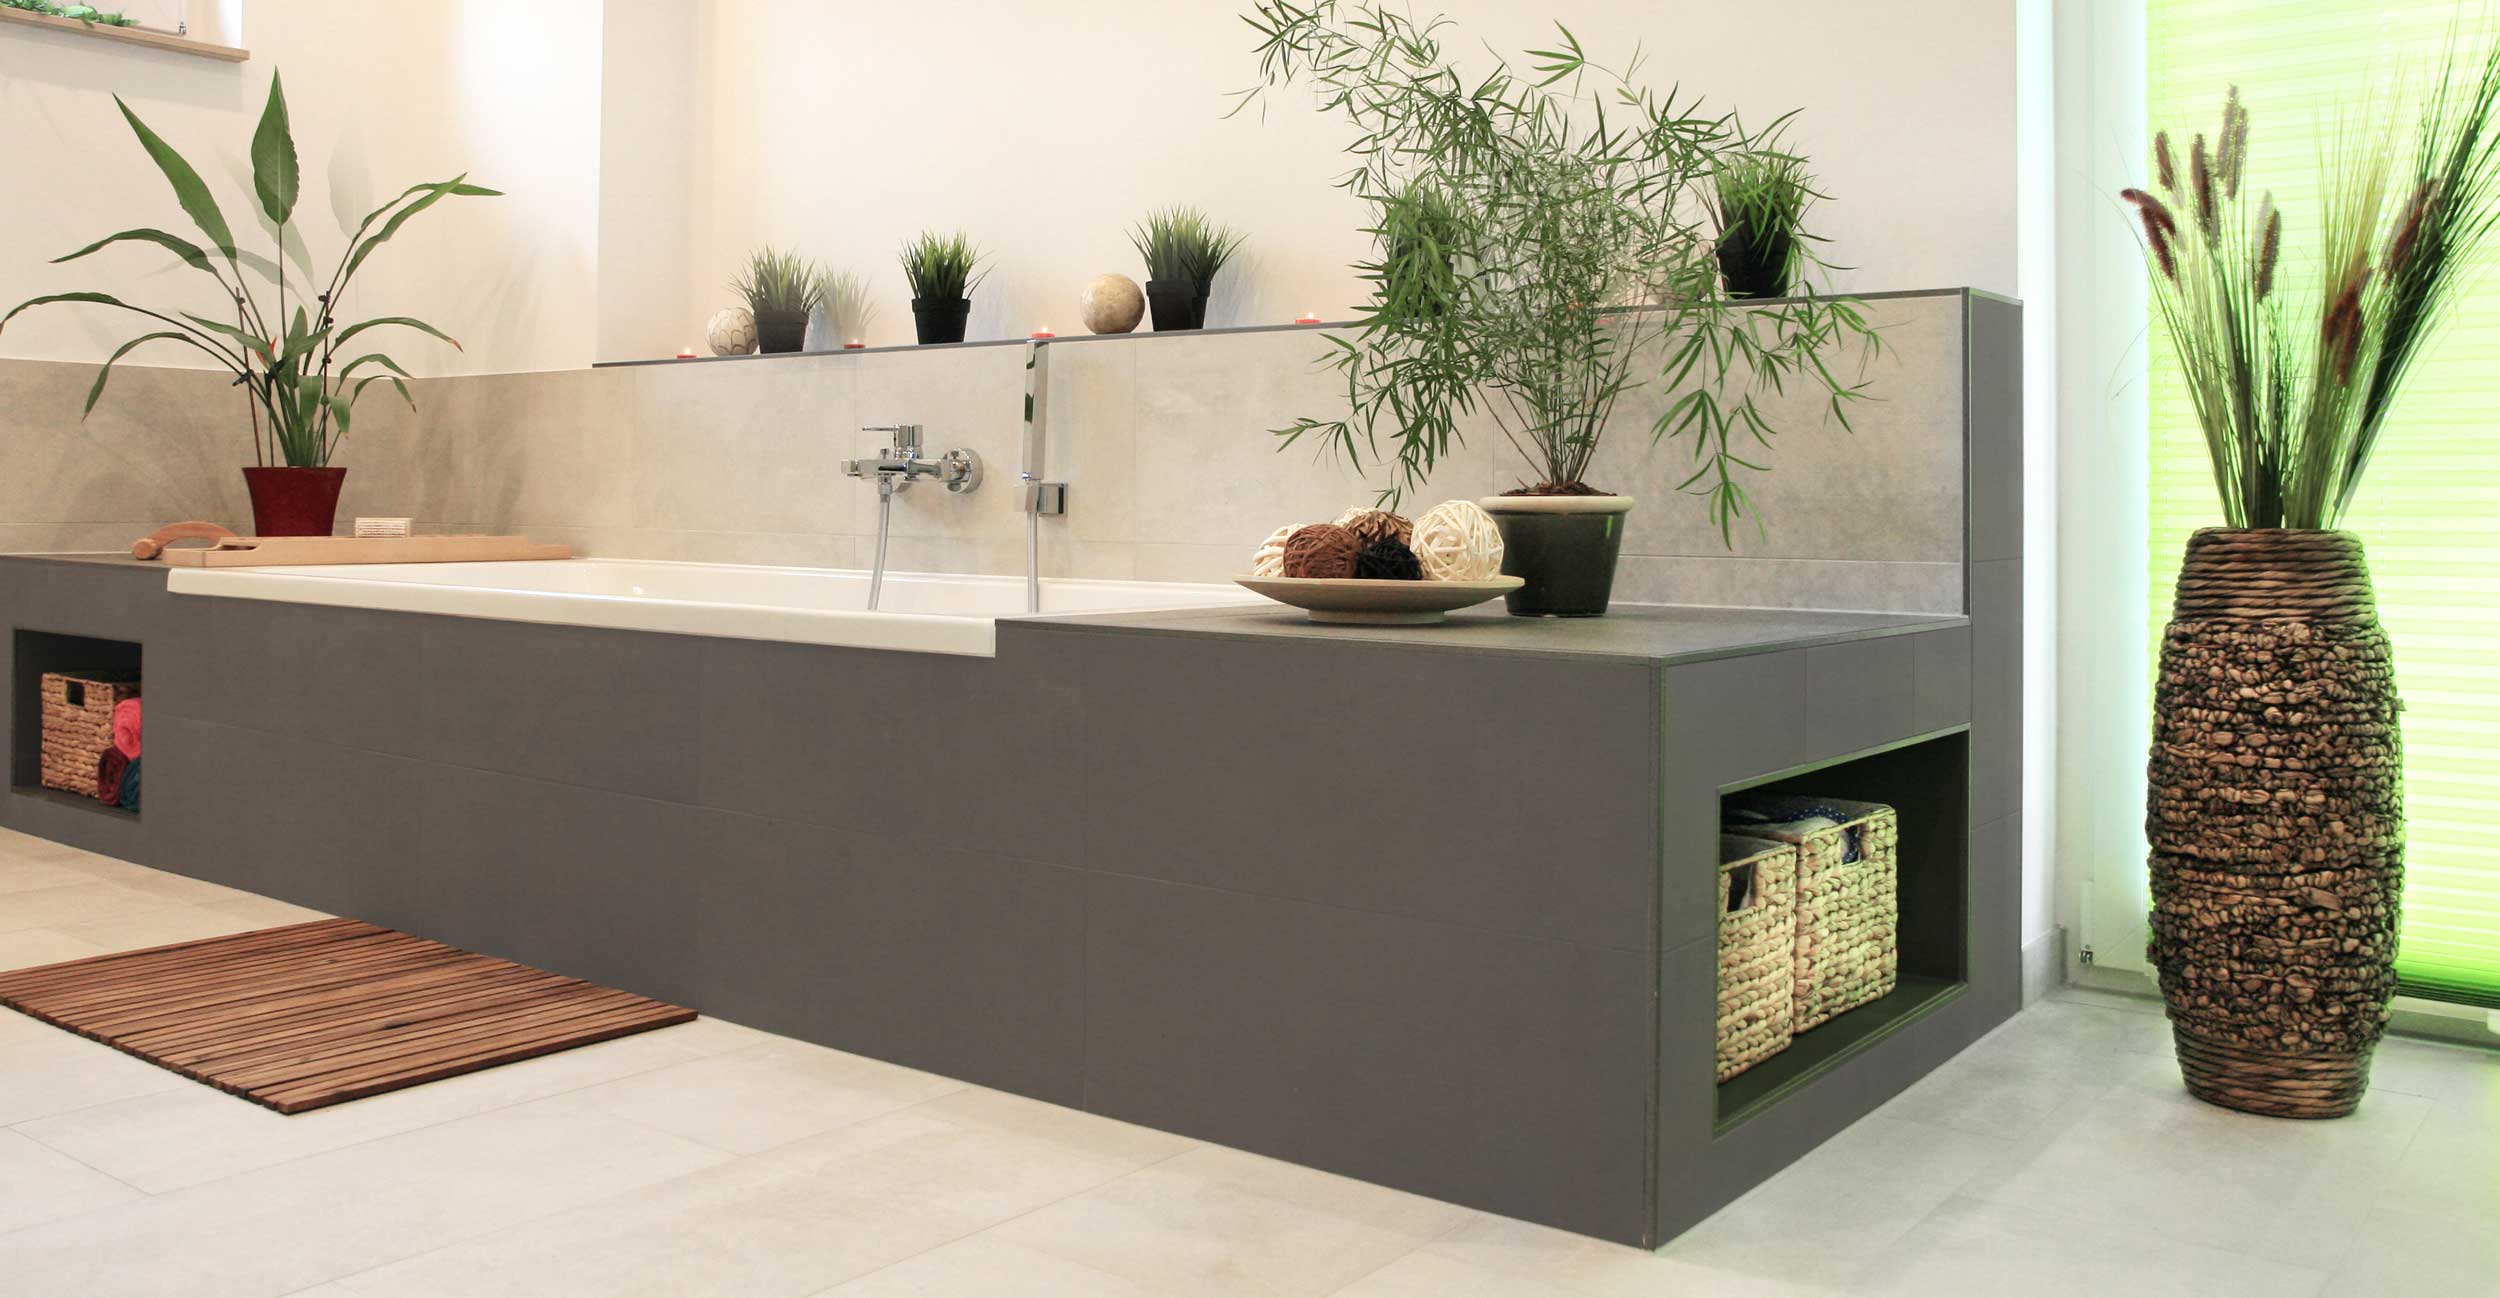 Eine rechteckige Badewanne eingefasst in Trockenbauelementen in grau und beige mit integrierten Ablageflächen.